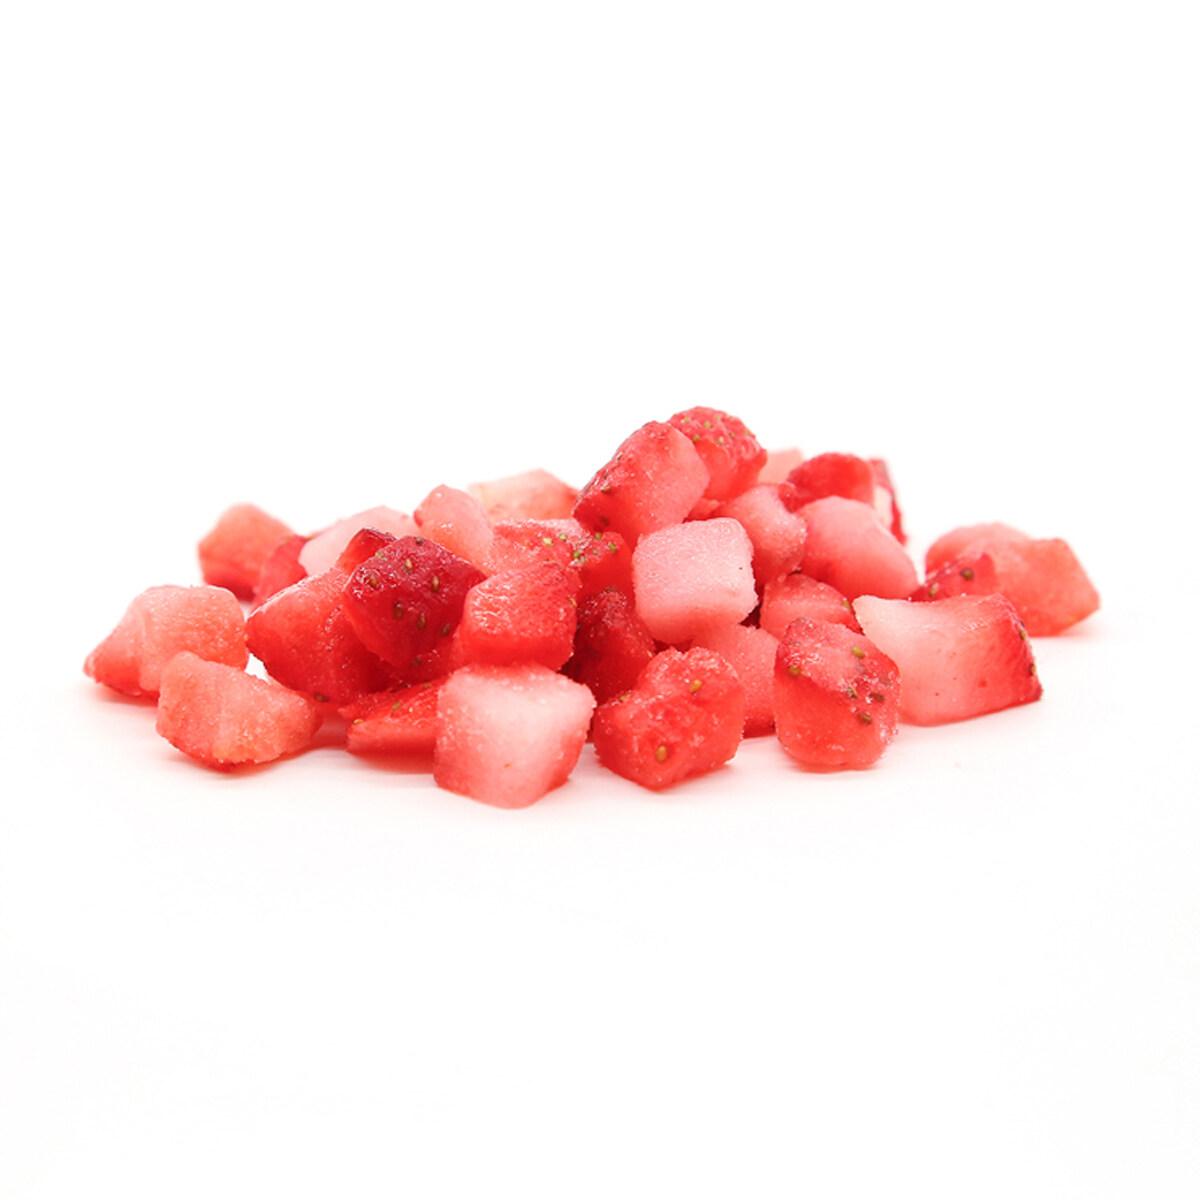 Strawberry de puerro congelado al por mayor, fresas congeladas OEM, fresas congeladas, fresas congeladas de alta calidad, dices de fresa congelados ODM